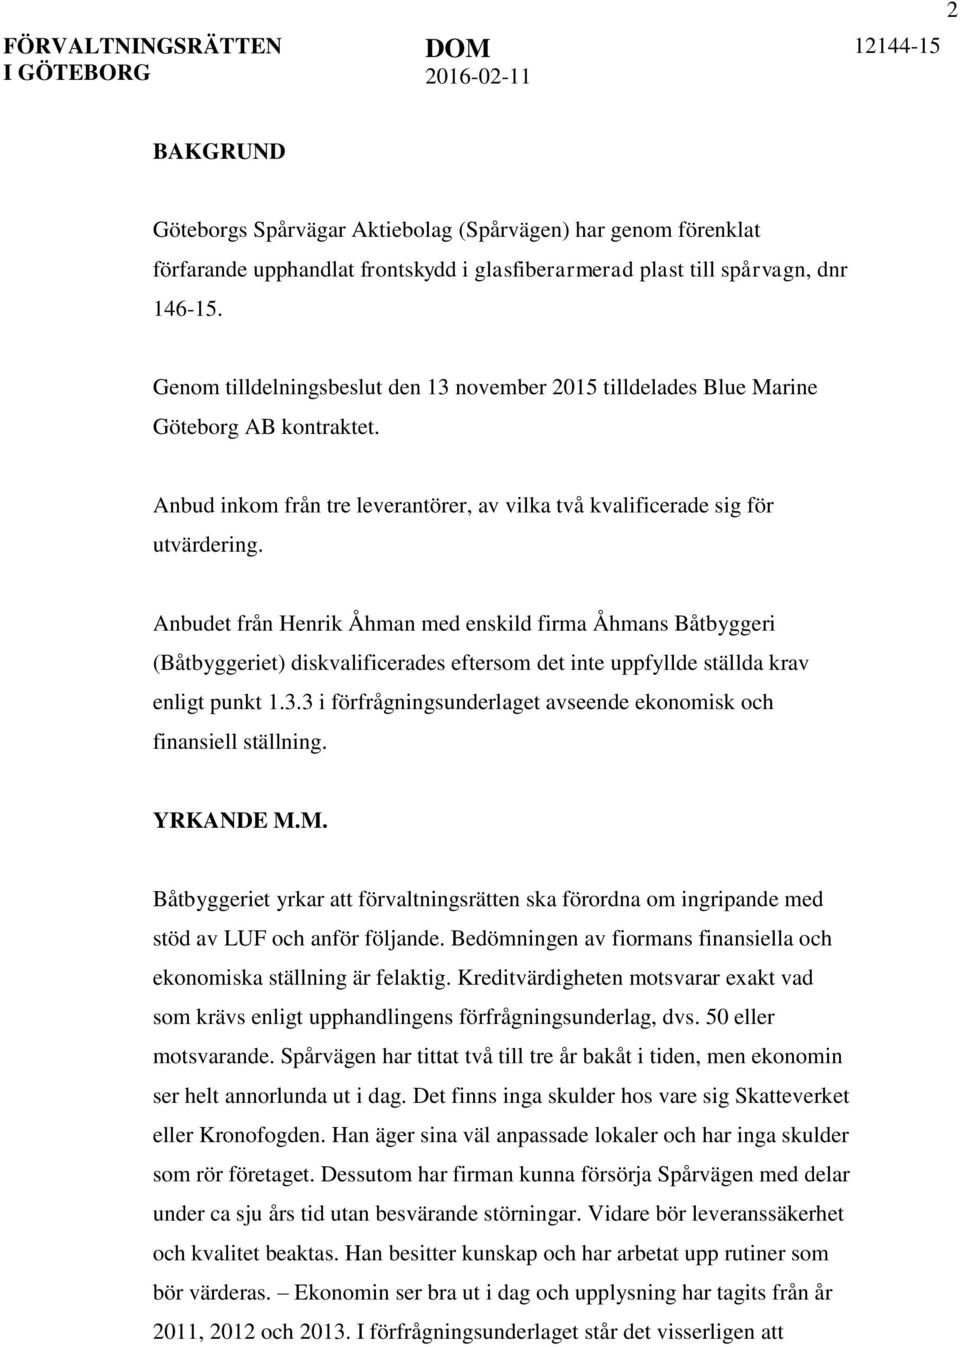 Anbudet från Henrik Åhman med enskild firma Åhmans Båtbyggeri (Båtbyggeriet) diskvalificerades eftersom det inte uppfyllde ställda krav enligt punkt 1.3.